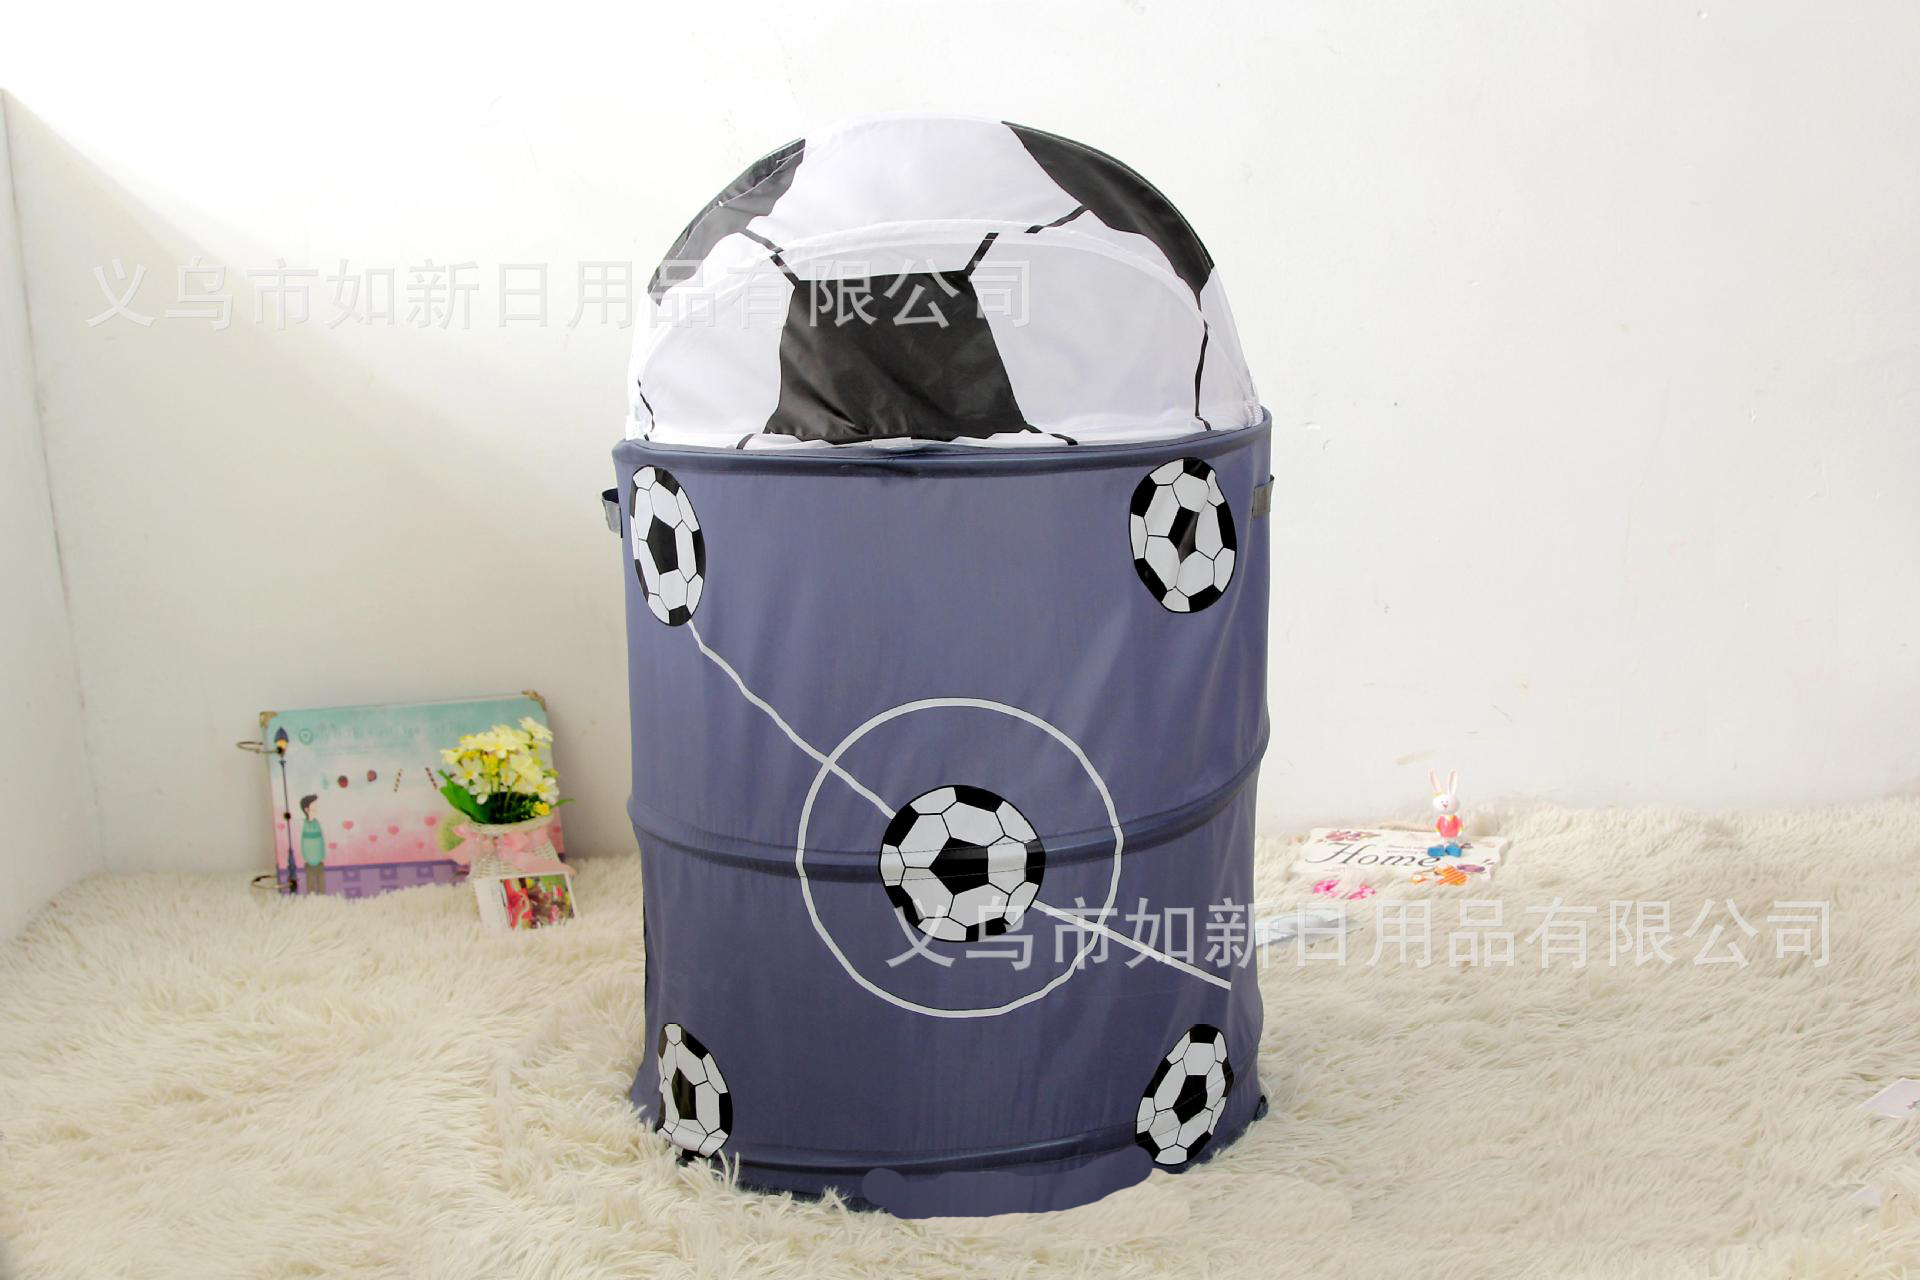 义乌好货 厂家直销布艺大号足球样式杂物桶 收纳框  收纳桶批发-1001/1497